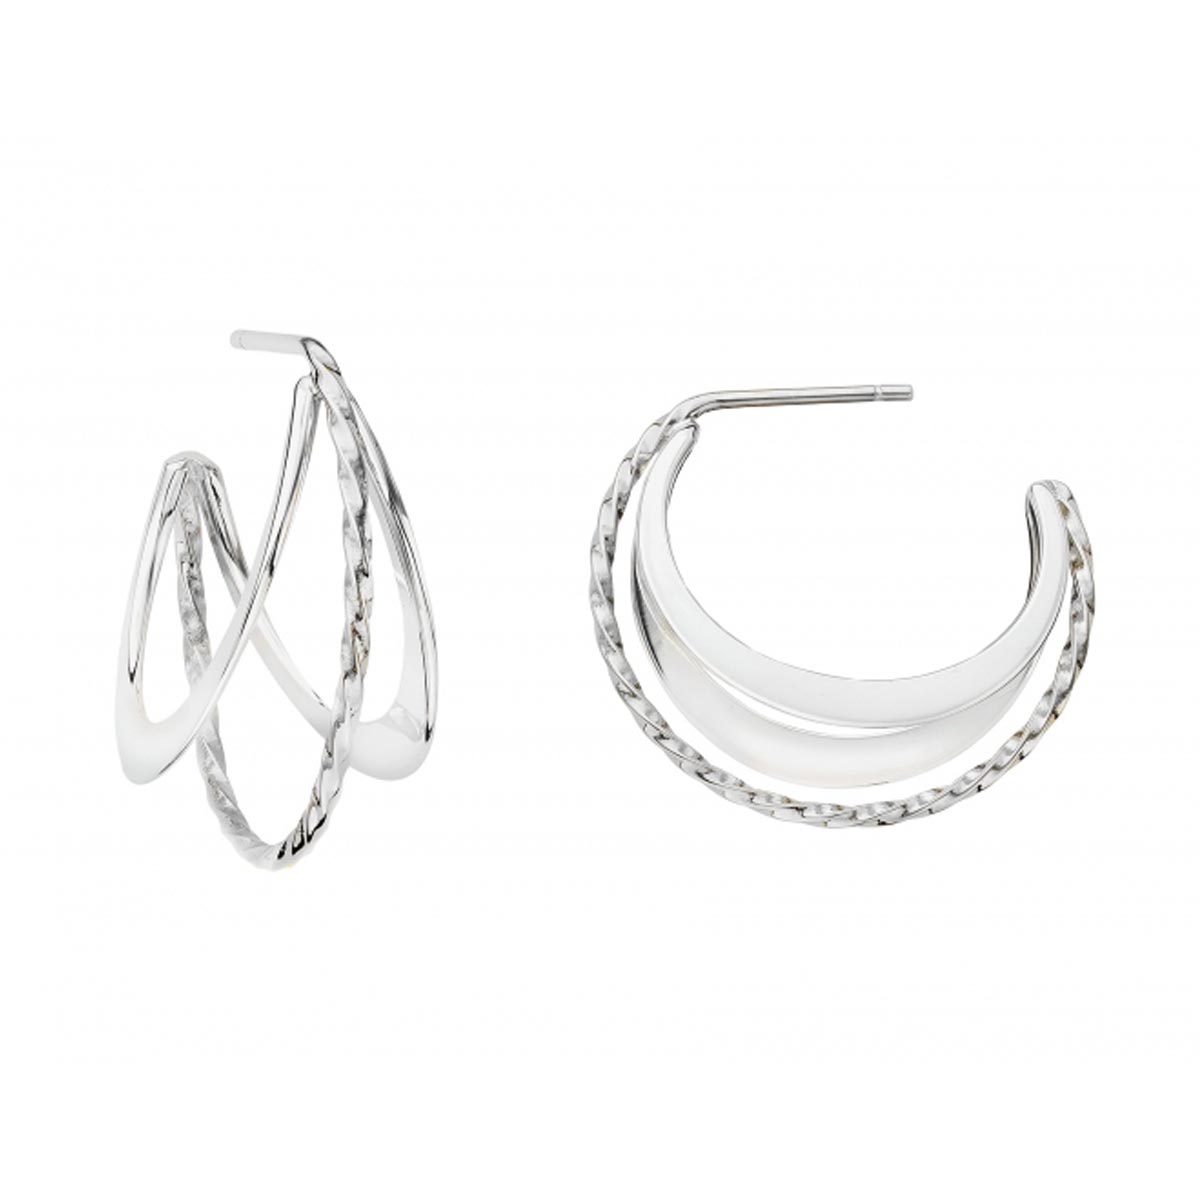 E.L. Designs Twizzler Hoop Earrings in Sterling Silver